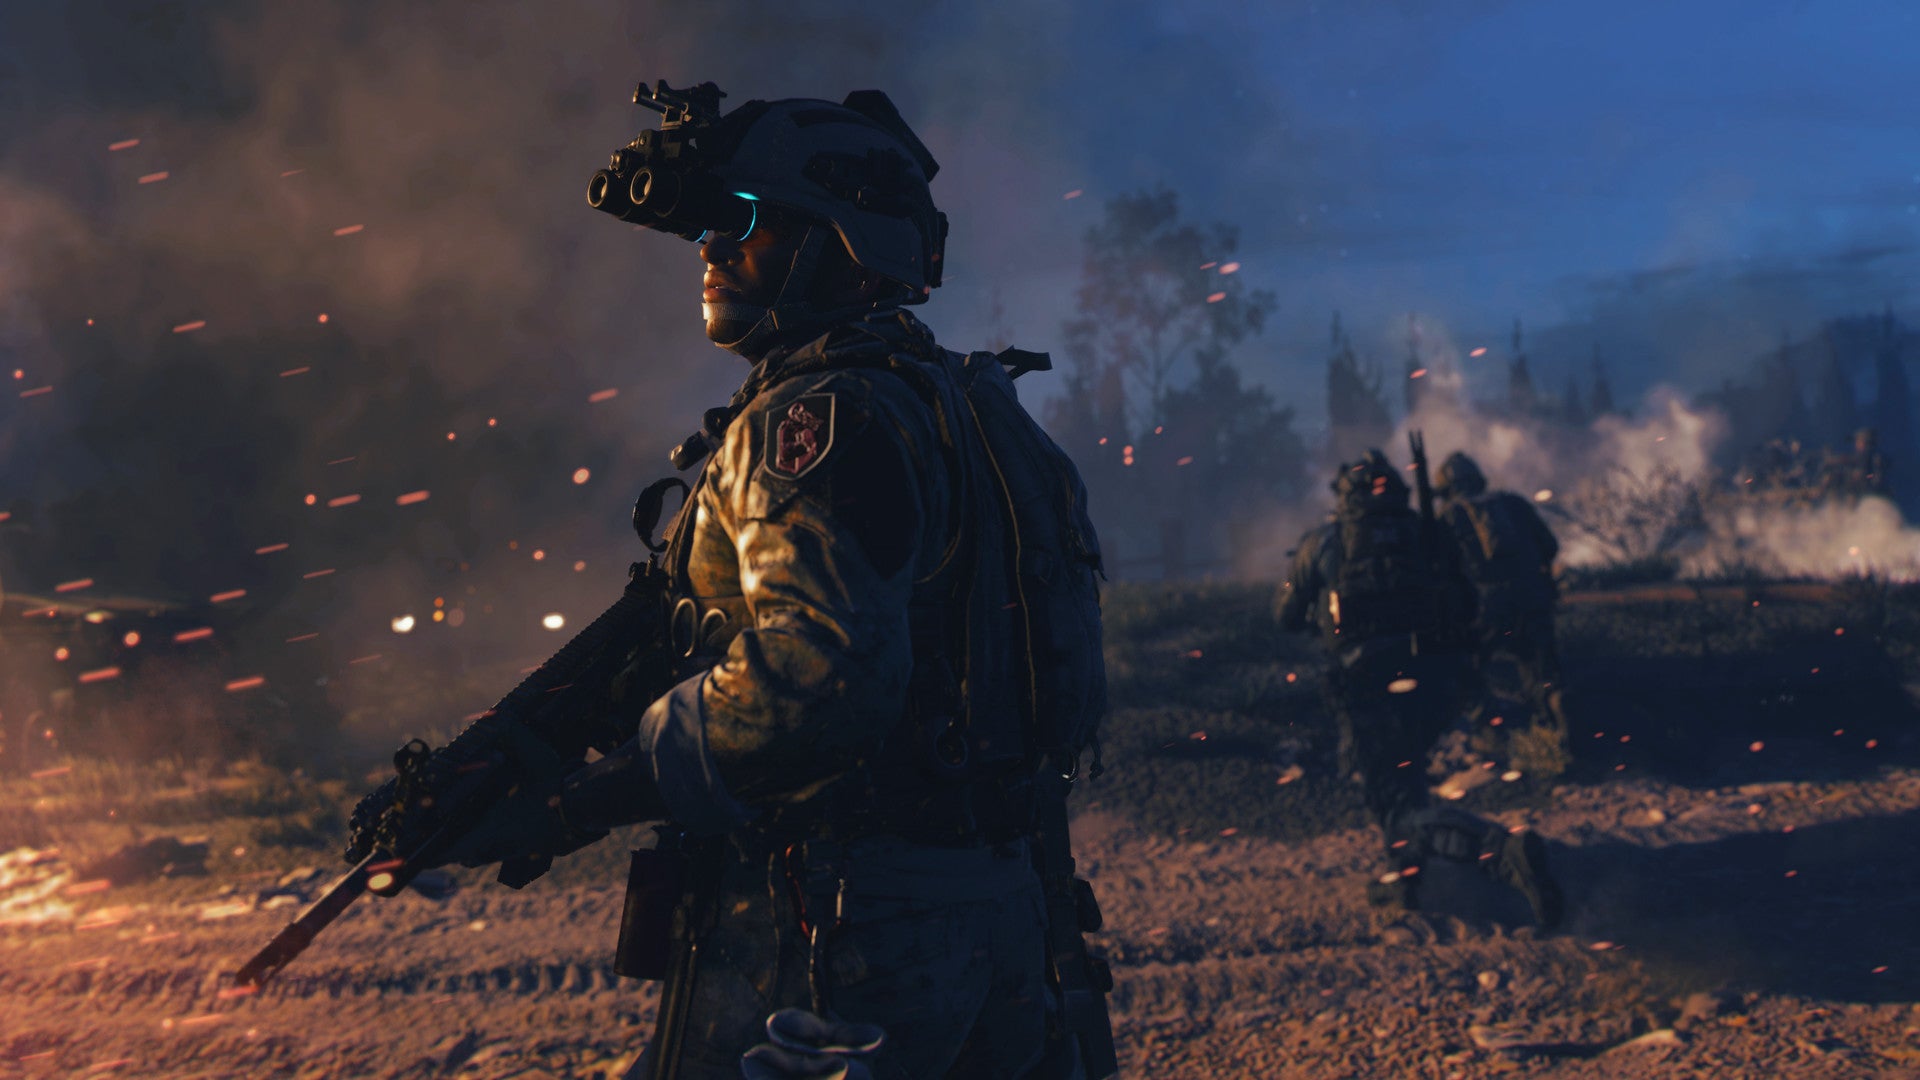 Obrazki dla Call of Duty zabiera oszustom broń. Nowa kara dla cheaterów